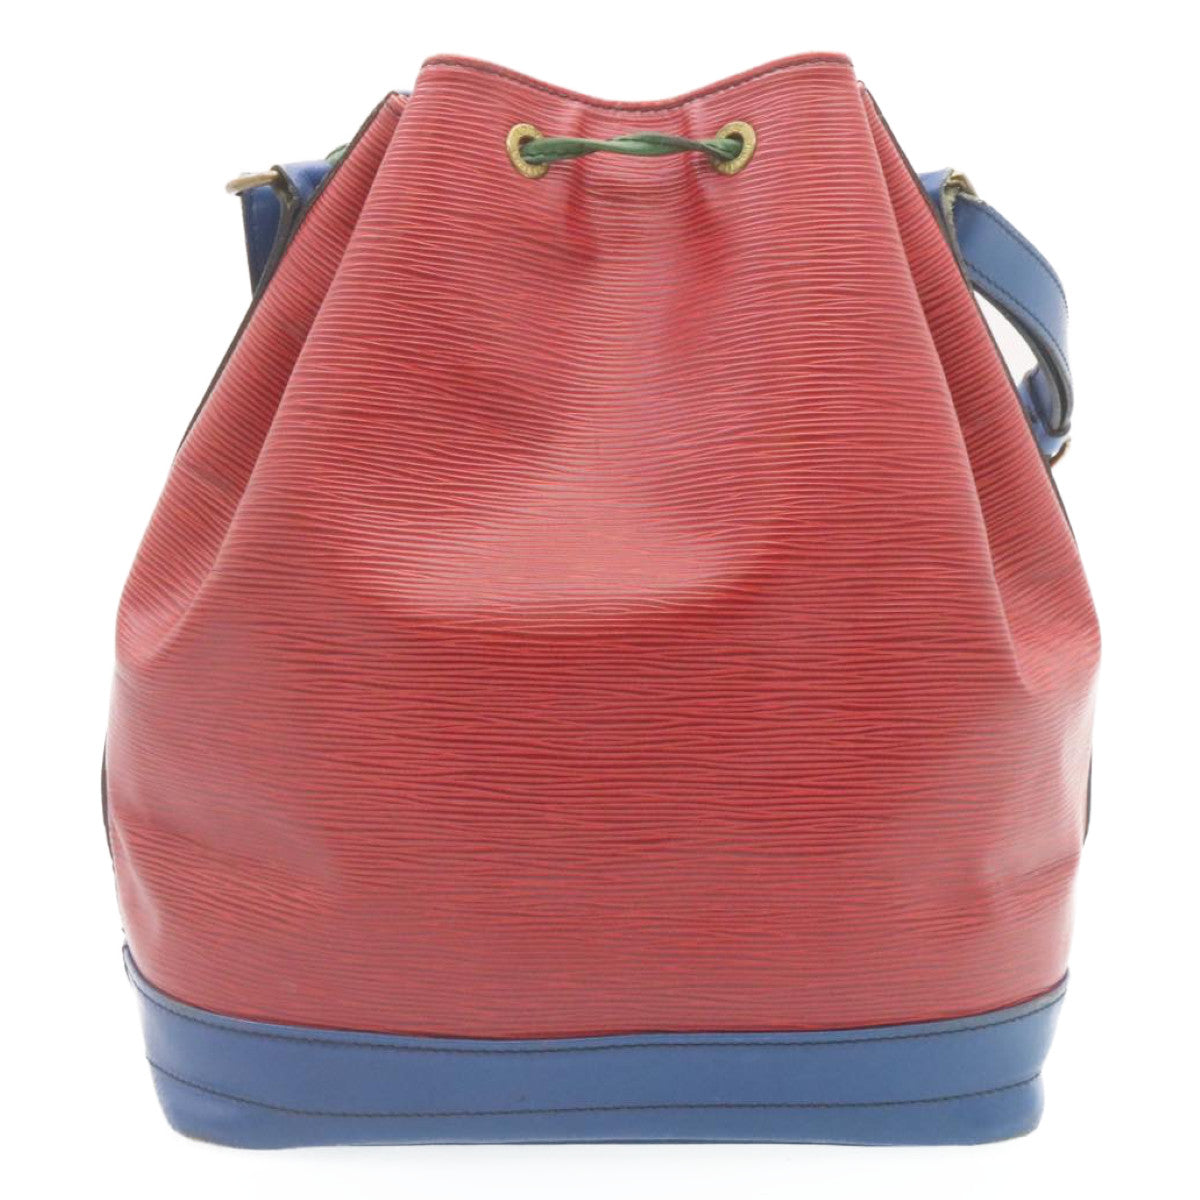 LOUIS VUITTON Epi Tricolor Noe Shoulder Bag Red Blue Green M44084 LV Auth 28905 - 0